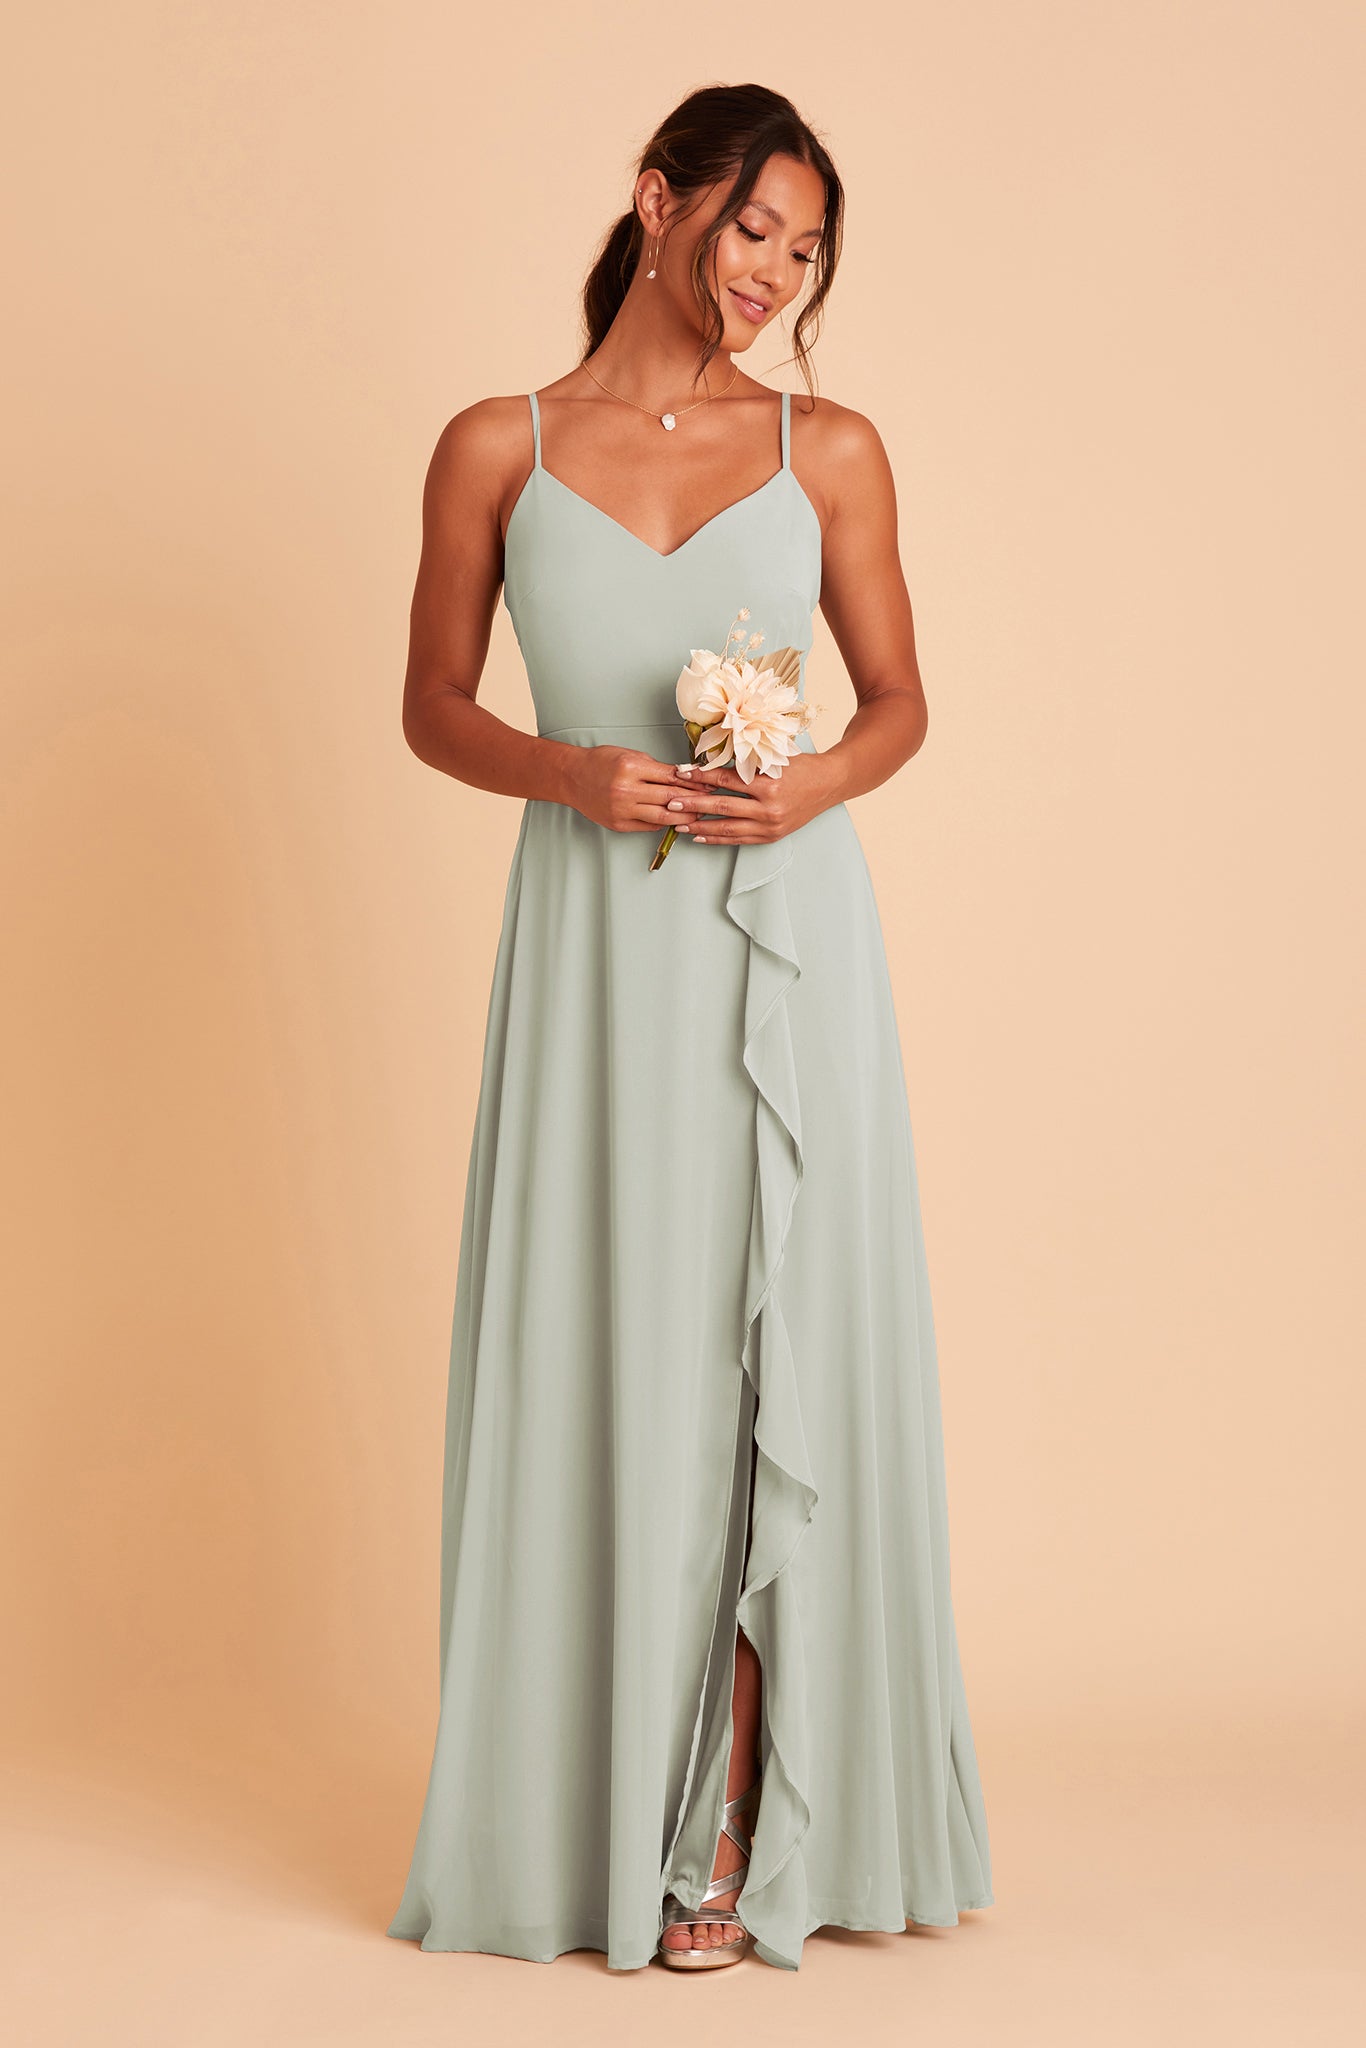 Sage Theresa Chiffon Dress by Birdy Grey